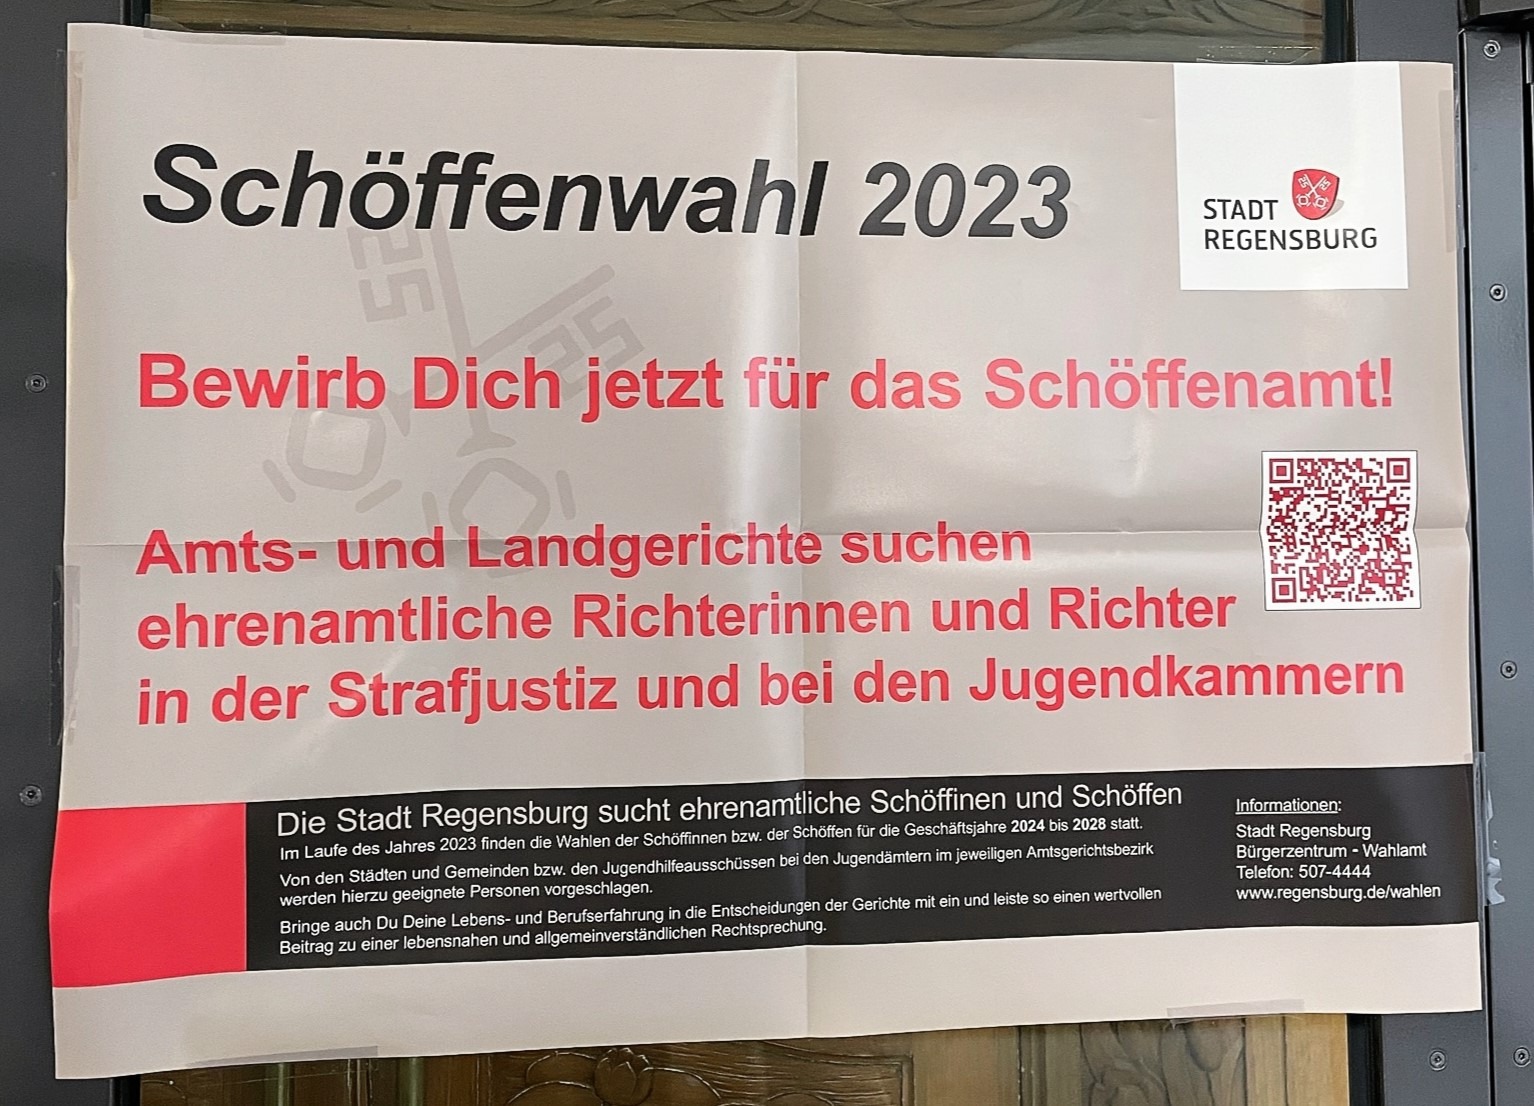 Schöffen gesucht in Regensburg für die Periode ab 2023